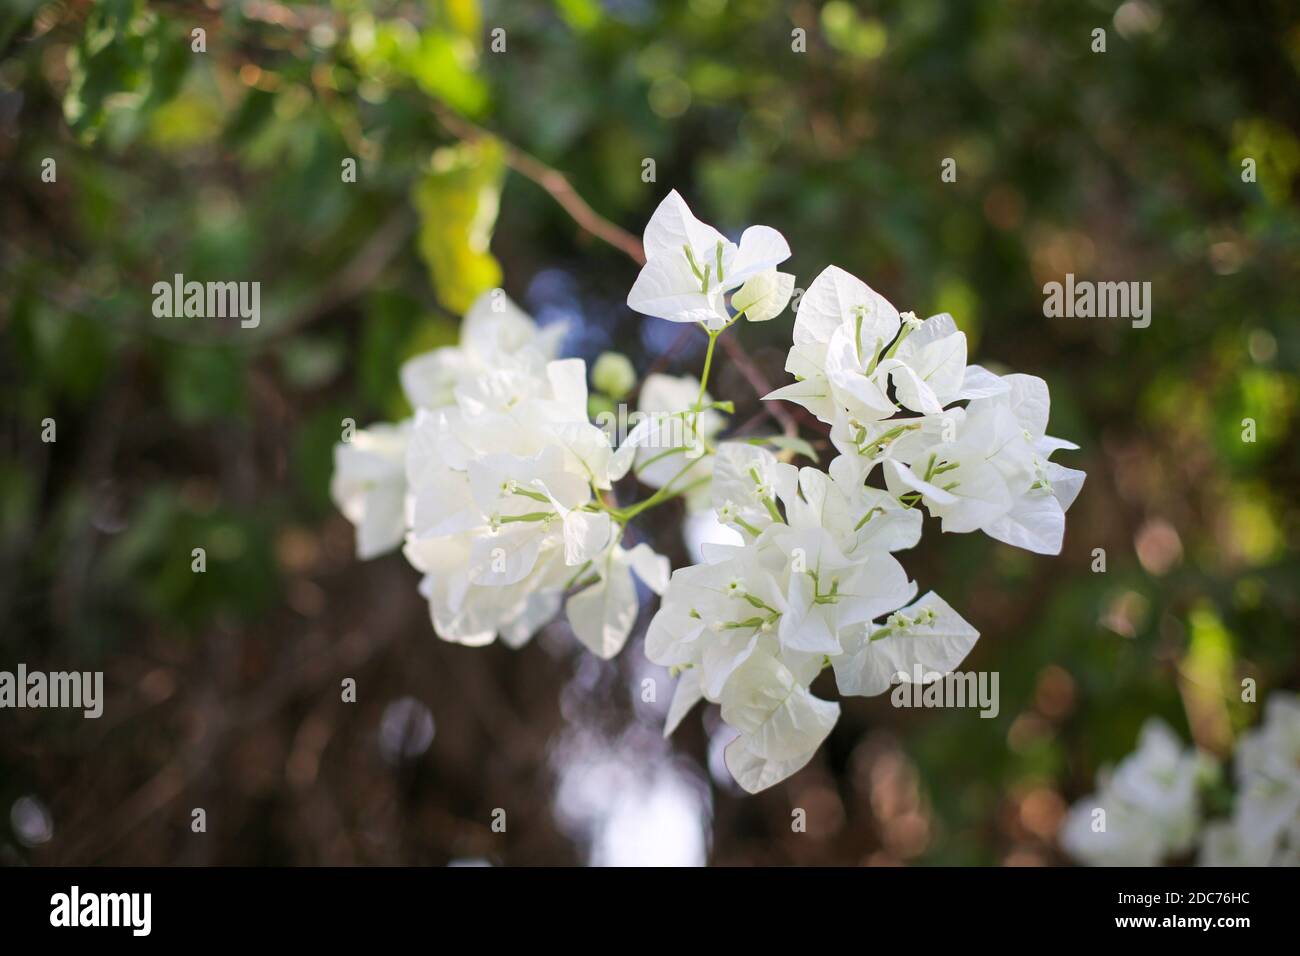 Pure White flowers of a Bougainvillea bush Stock Photo